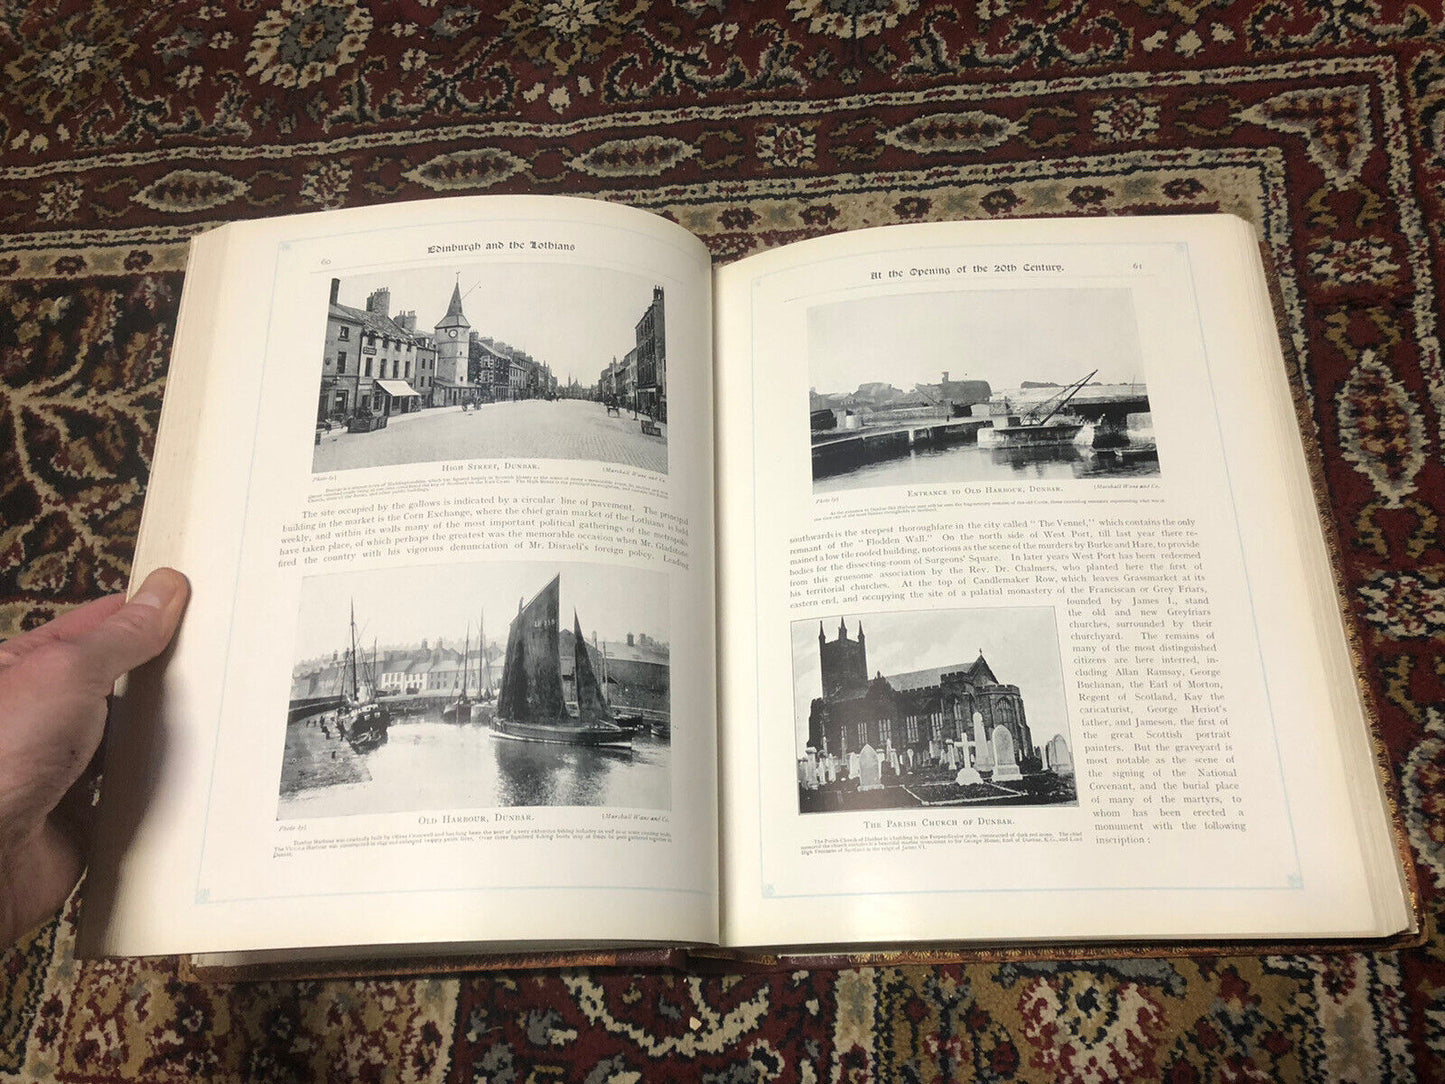 1904 Edinburgh and the Lothians Contemporary Biographies : Eddington : Scotland